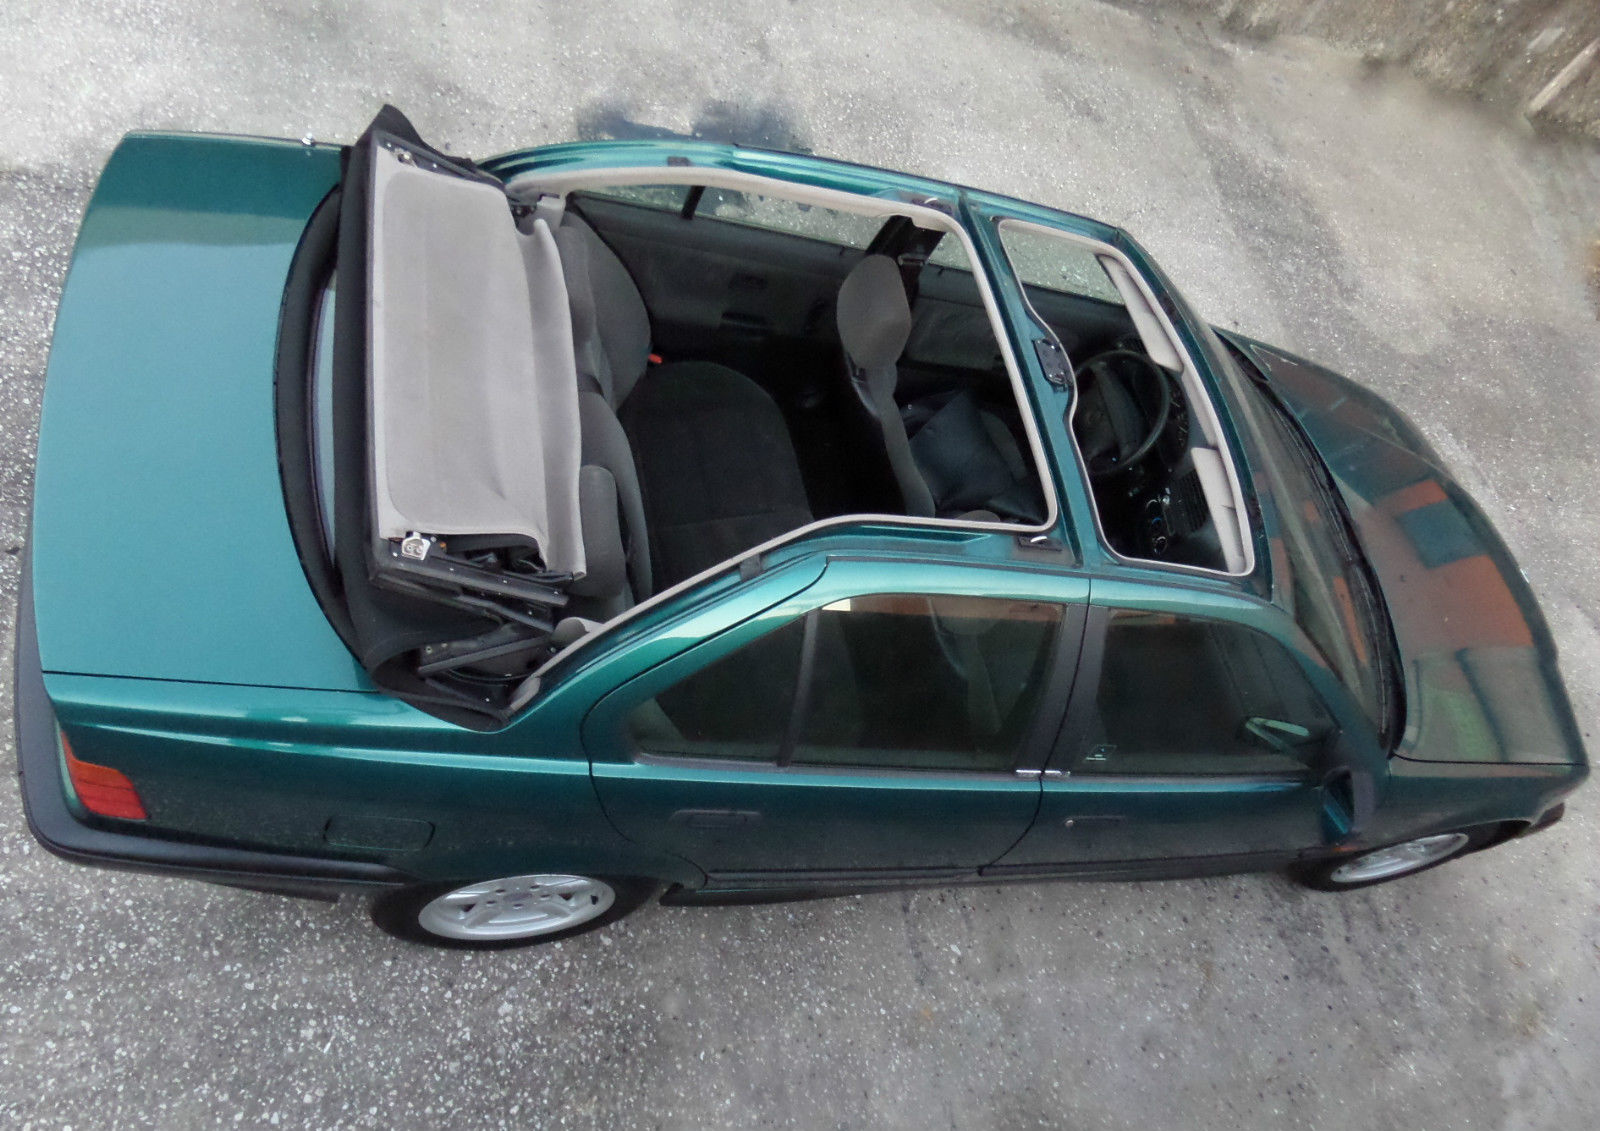 E36 Baur Cabriolet for Sale on eBay!